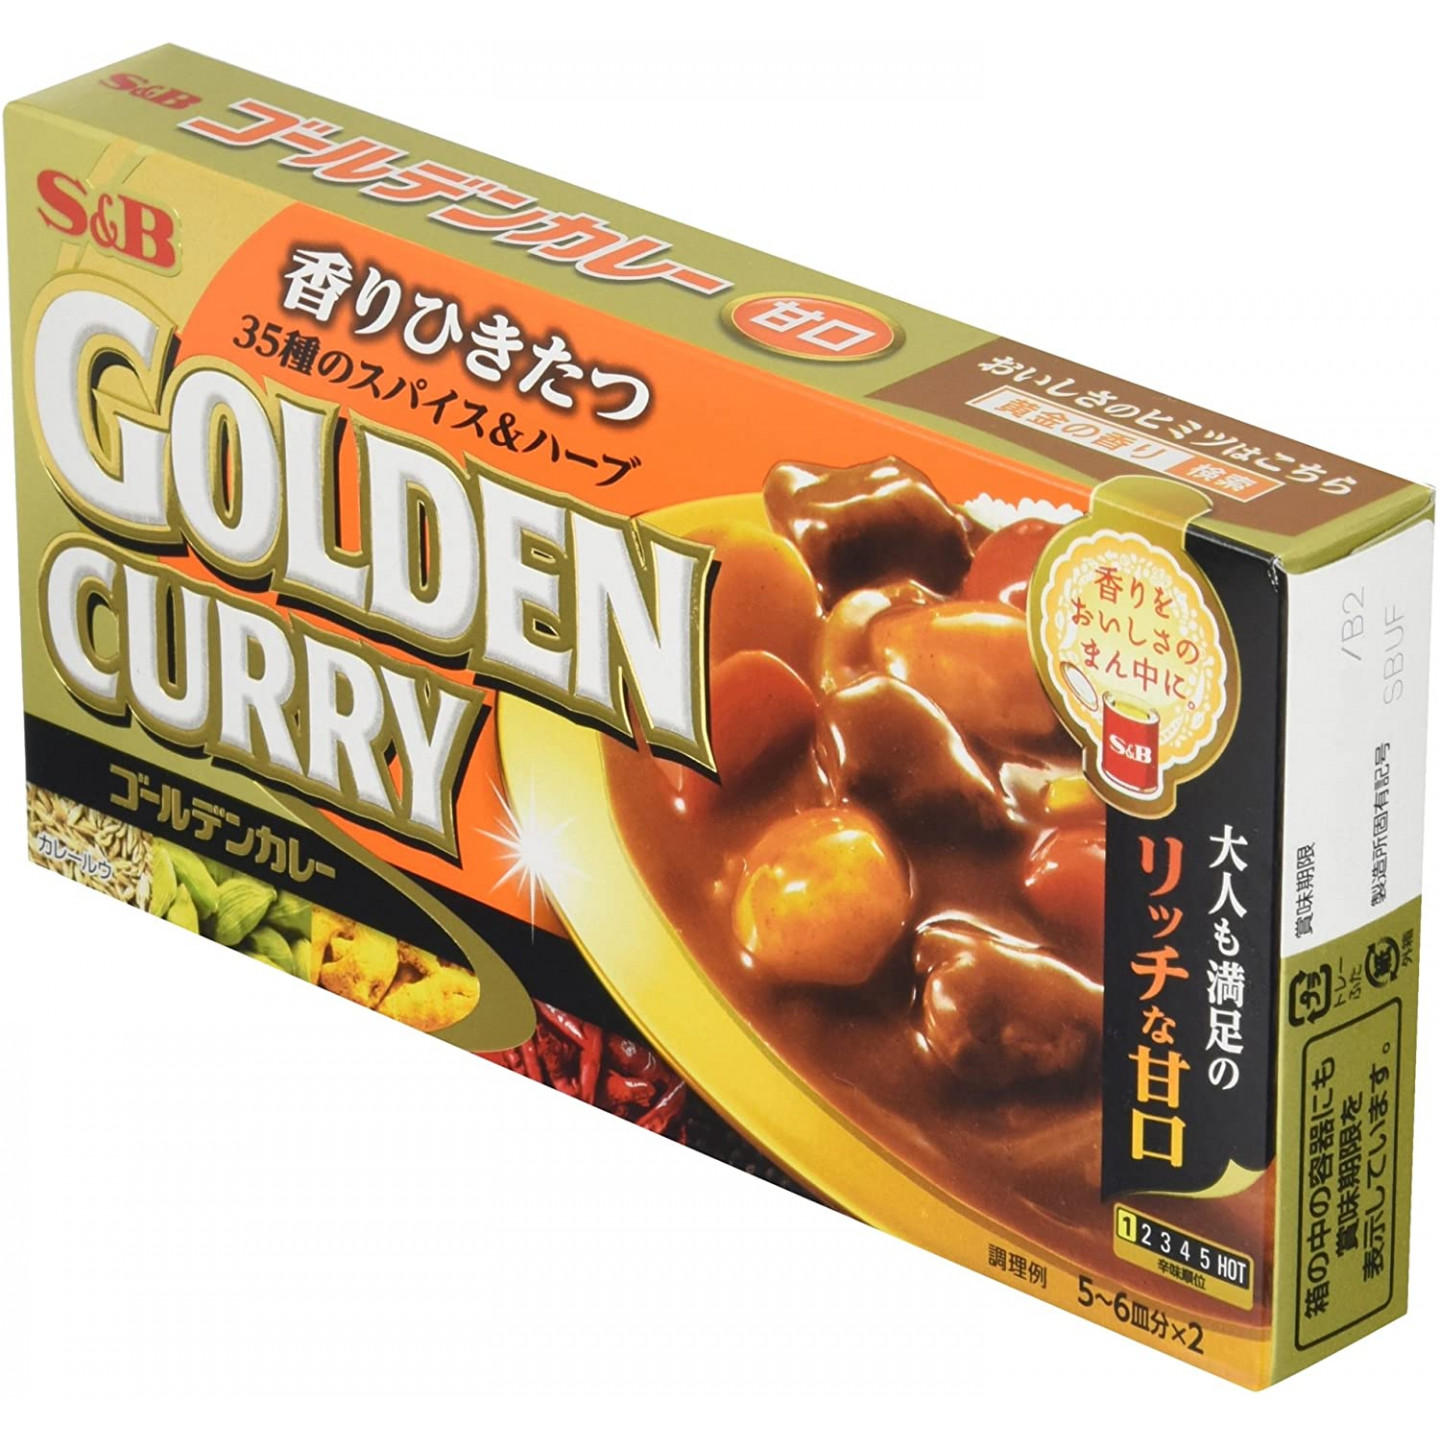 S&B - Golden Curry - Curry doux en cubes